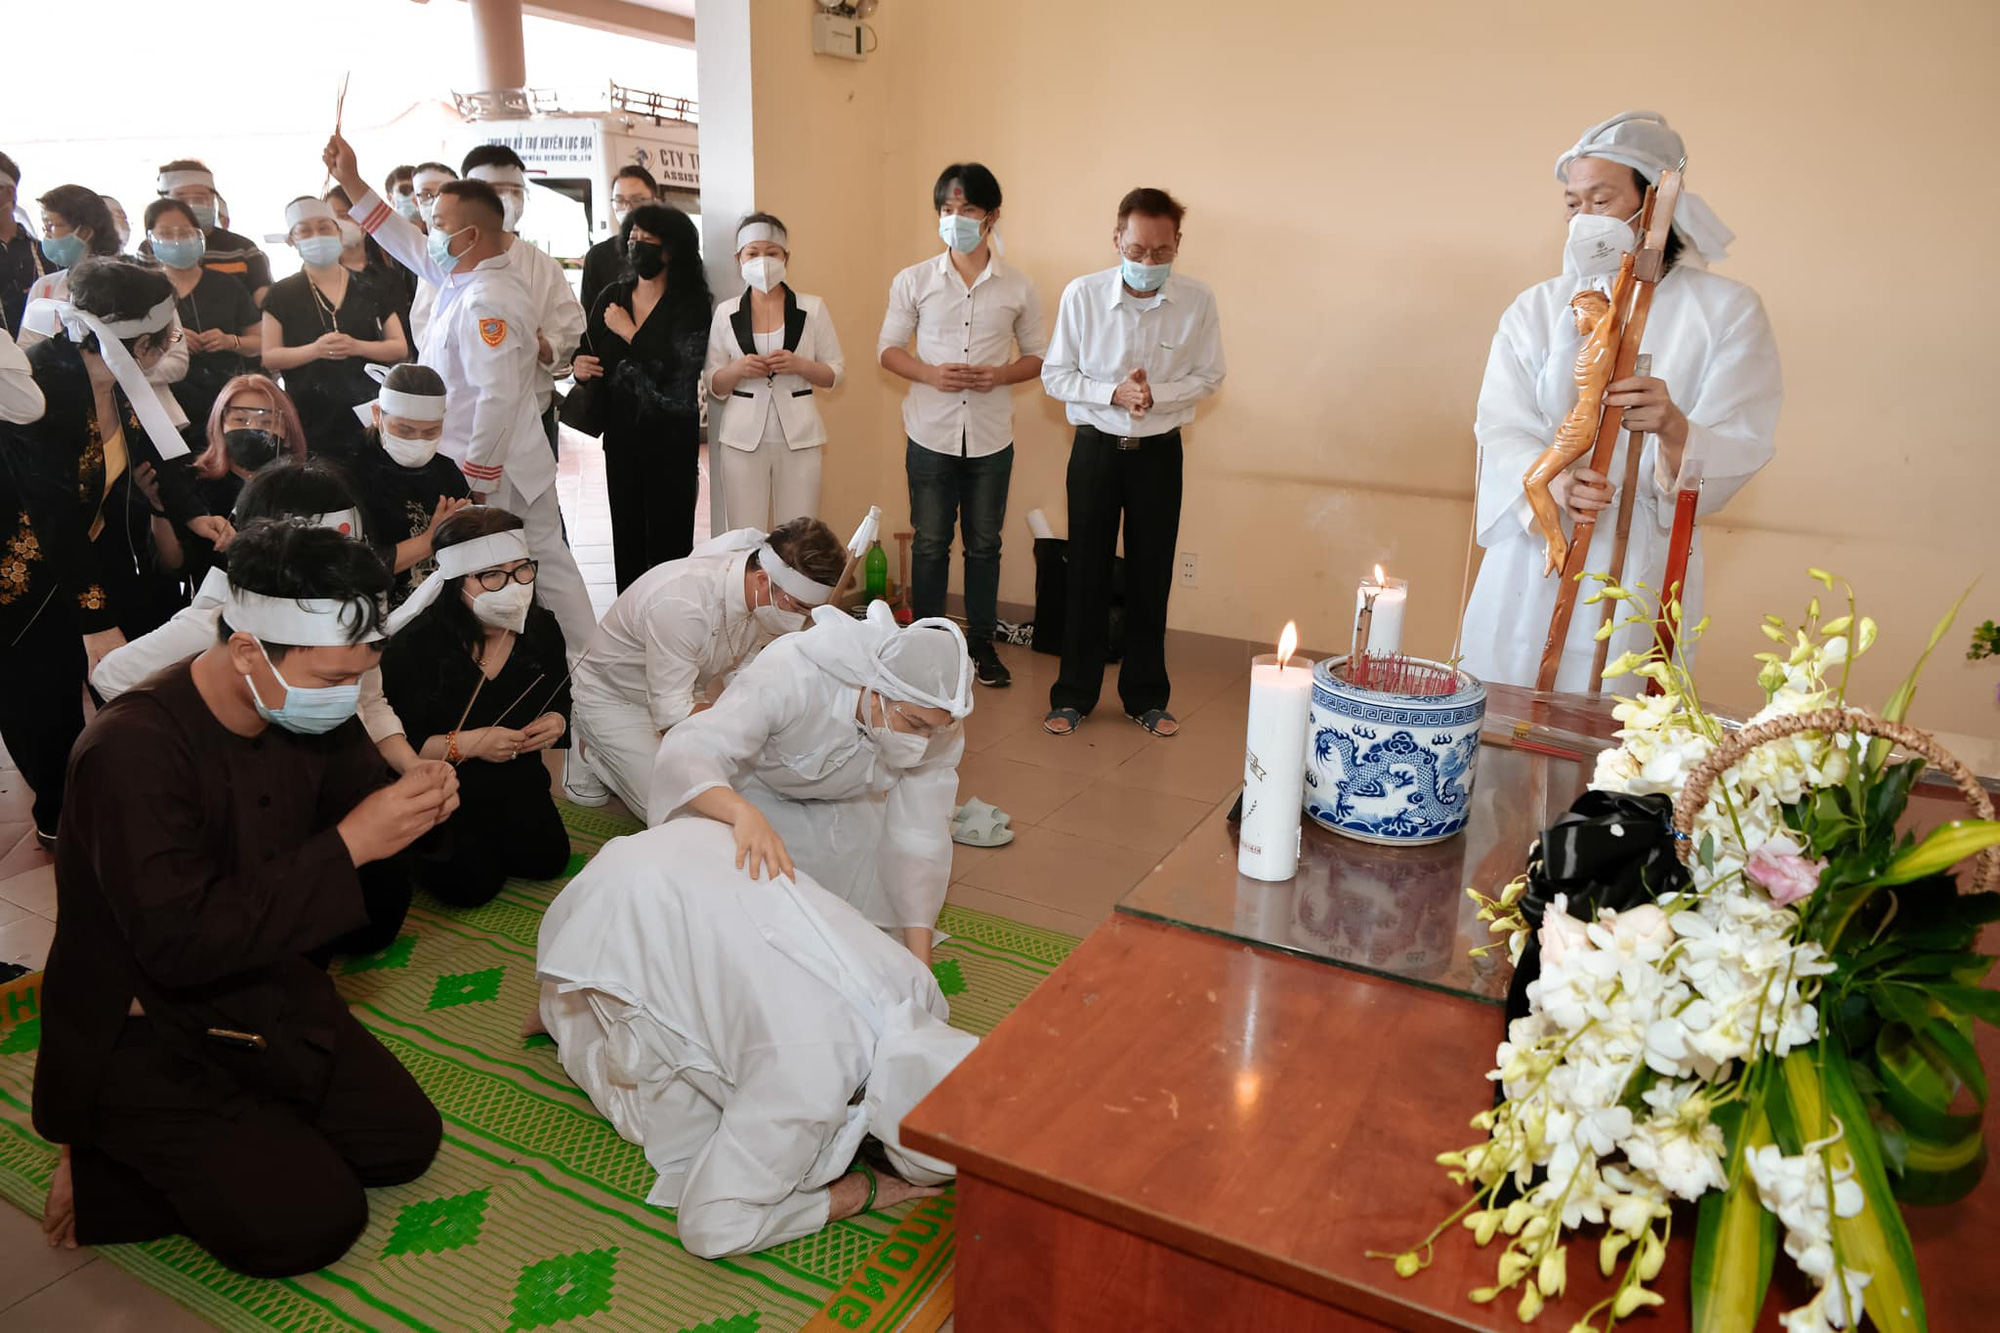 Dương Triệu Vũ đăng loạt ảnh trong đám tang bố, NS Hoài Linh ngã quỵ trước linh cữu - Ảnh 9.